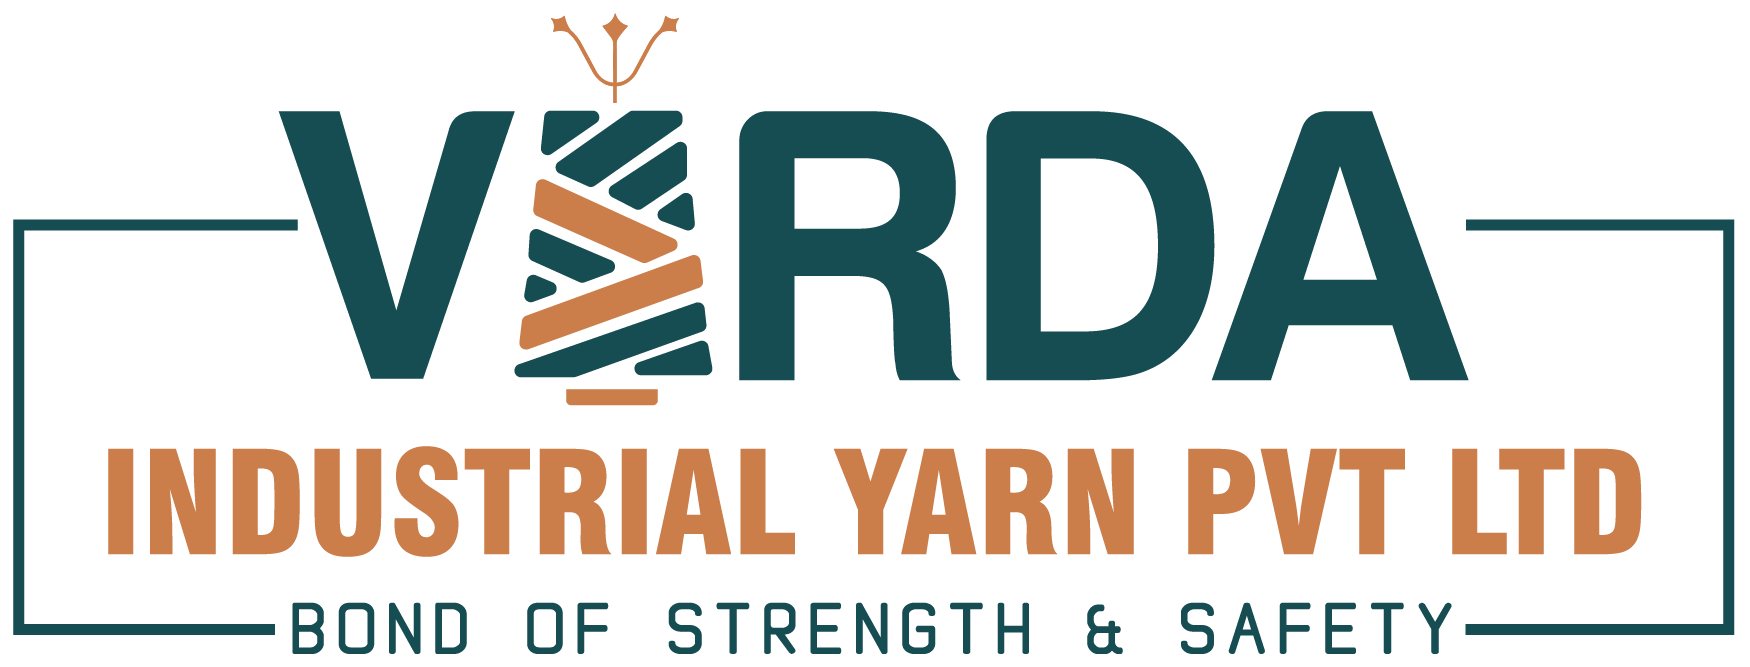 Varda Industrial Yarn Pvt Ltd: Home